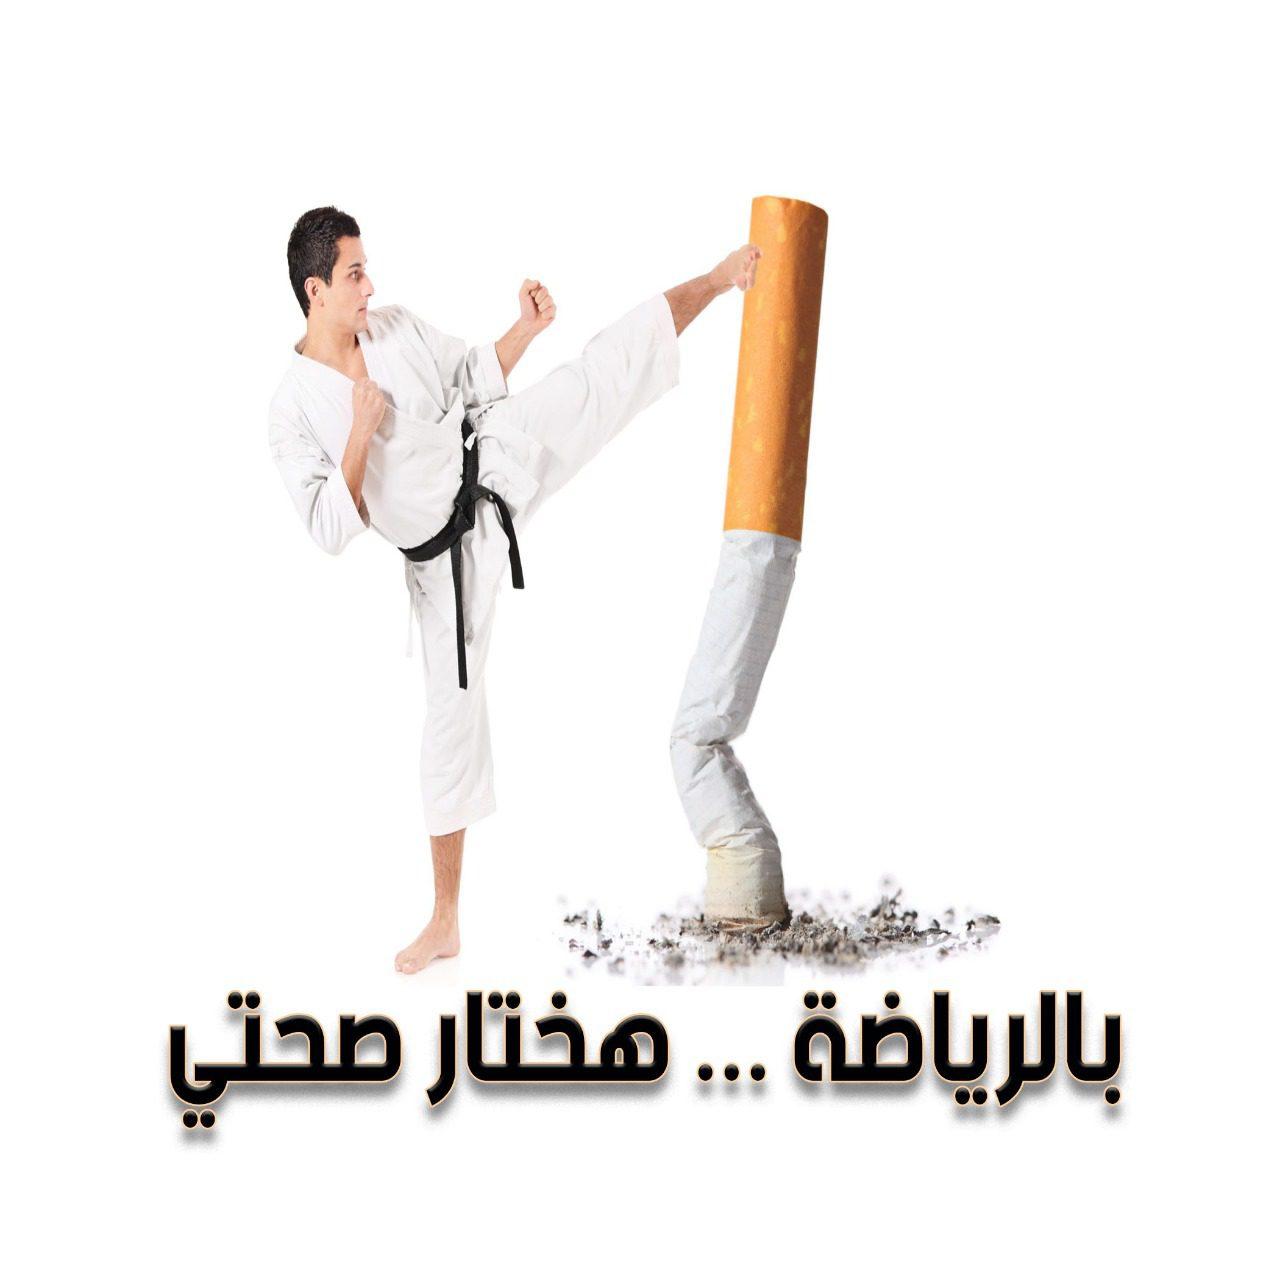 ” بالرياضة هختار صحتي _ لا للتدخين ” شعار الفاعلية الرياضية تحت رعاية وزارة الشباب والرياضة